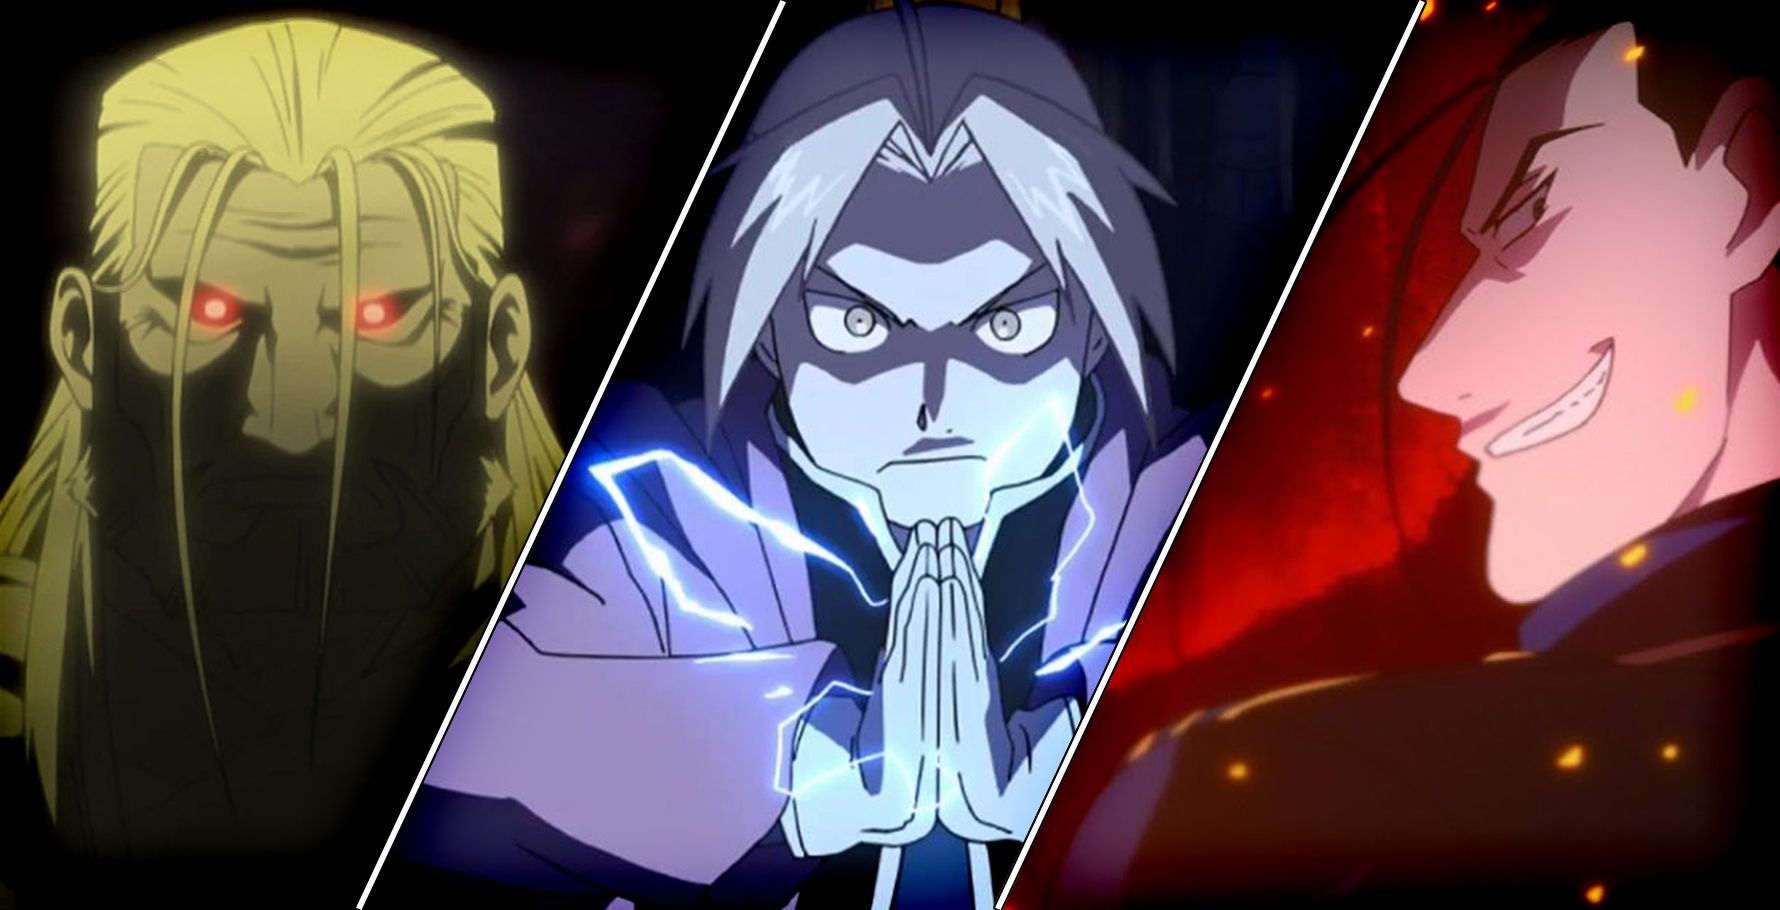 anime aesthetics on X: Anime : Fullmetal Alchemist Brotherhood   / X